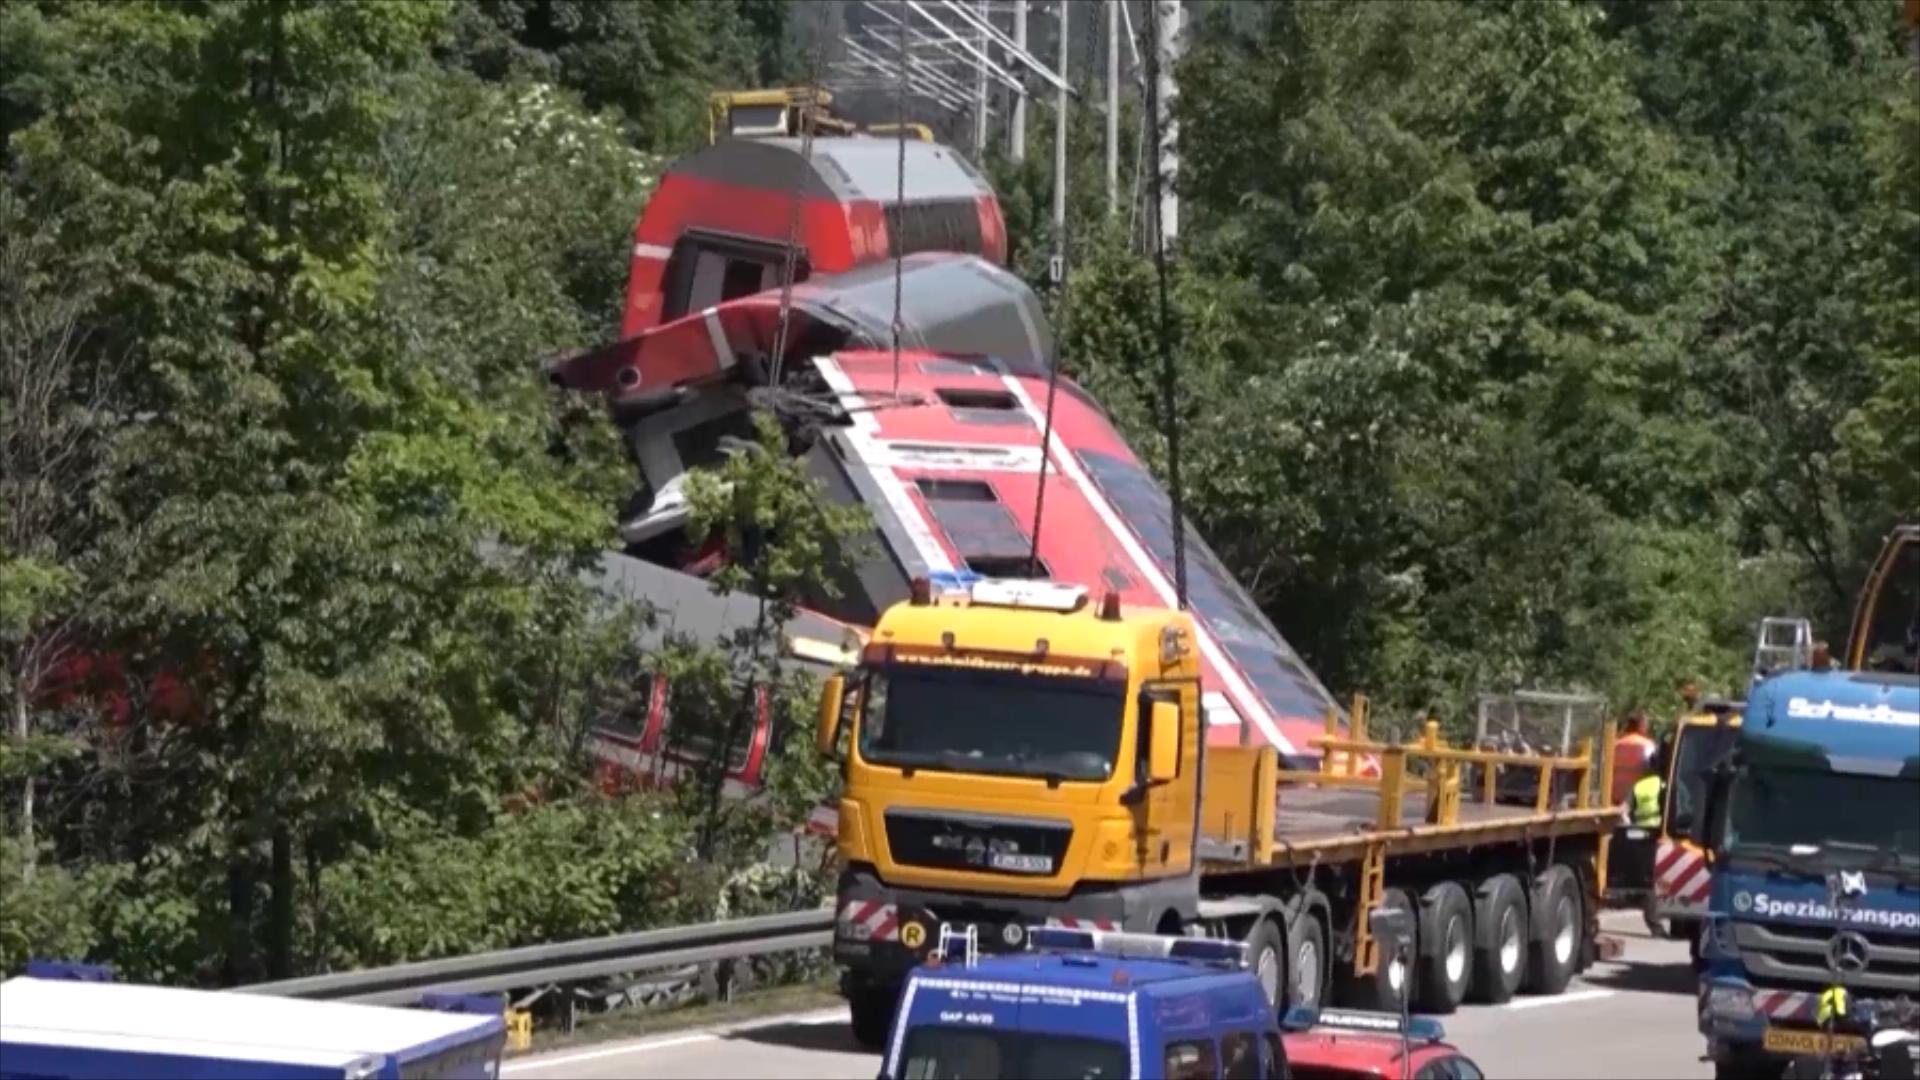 台铁脱轨事故致50死146伤，列车仍深陷在隧道中